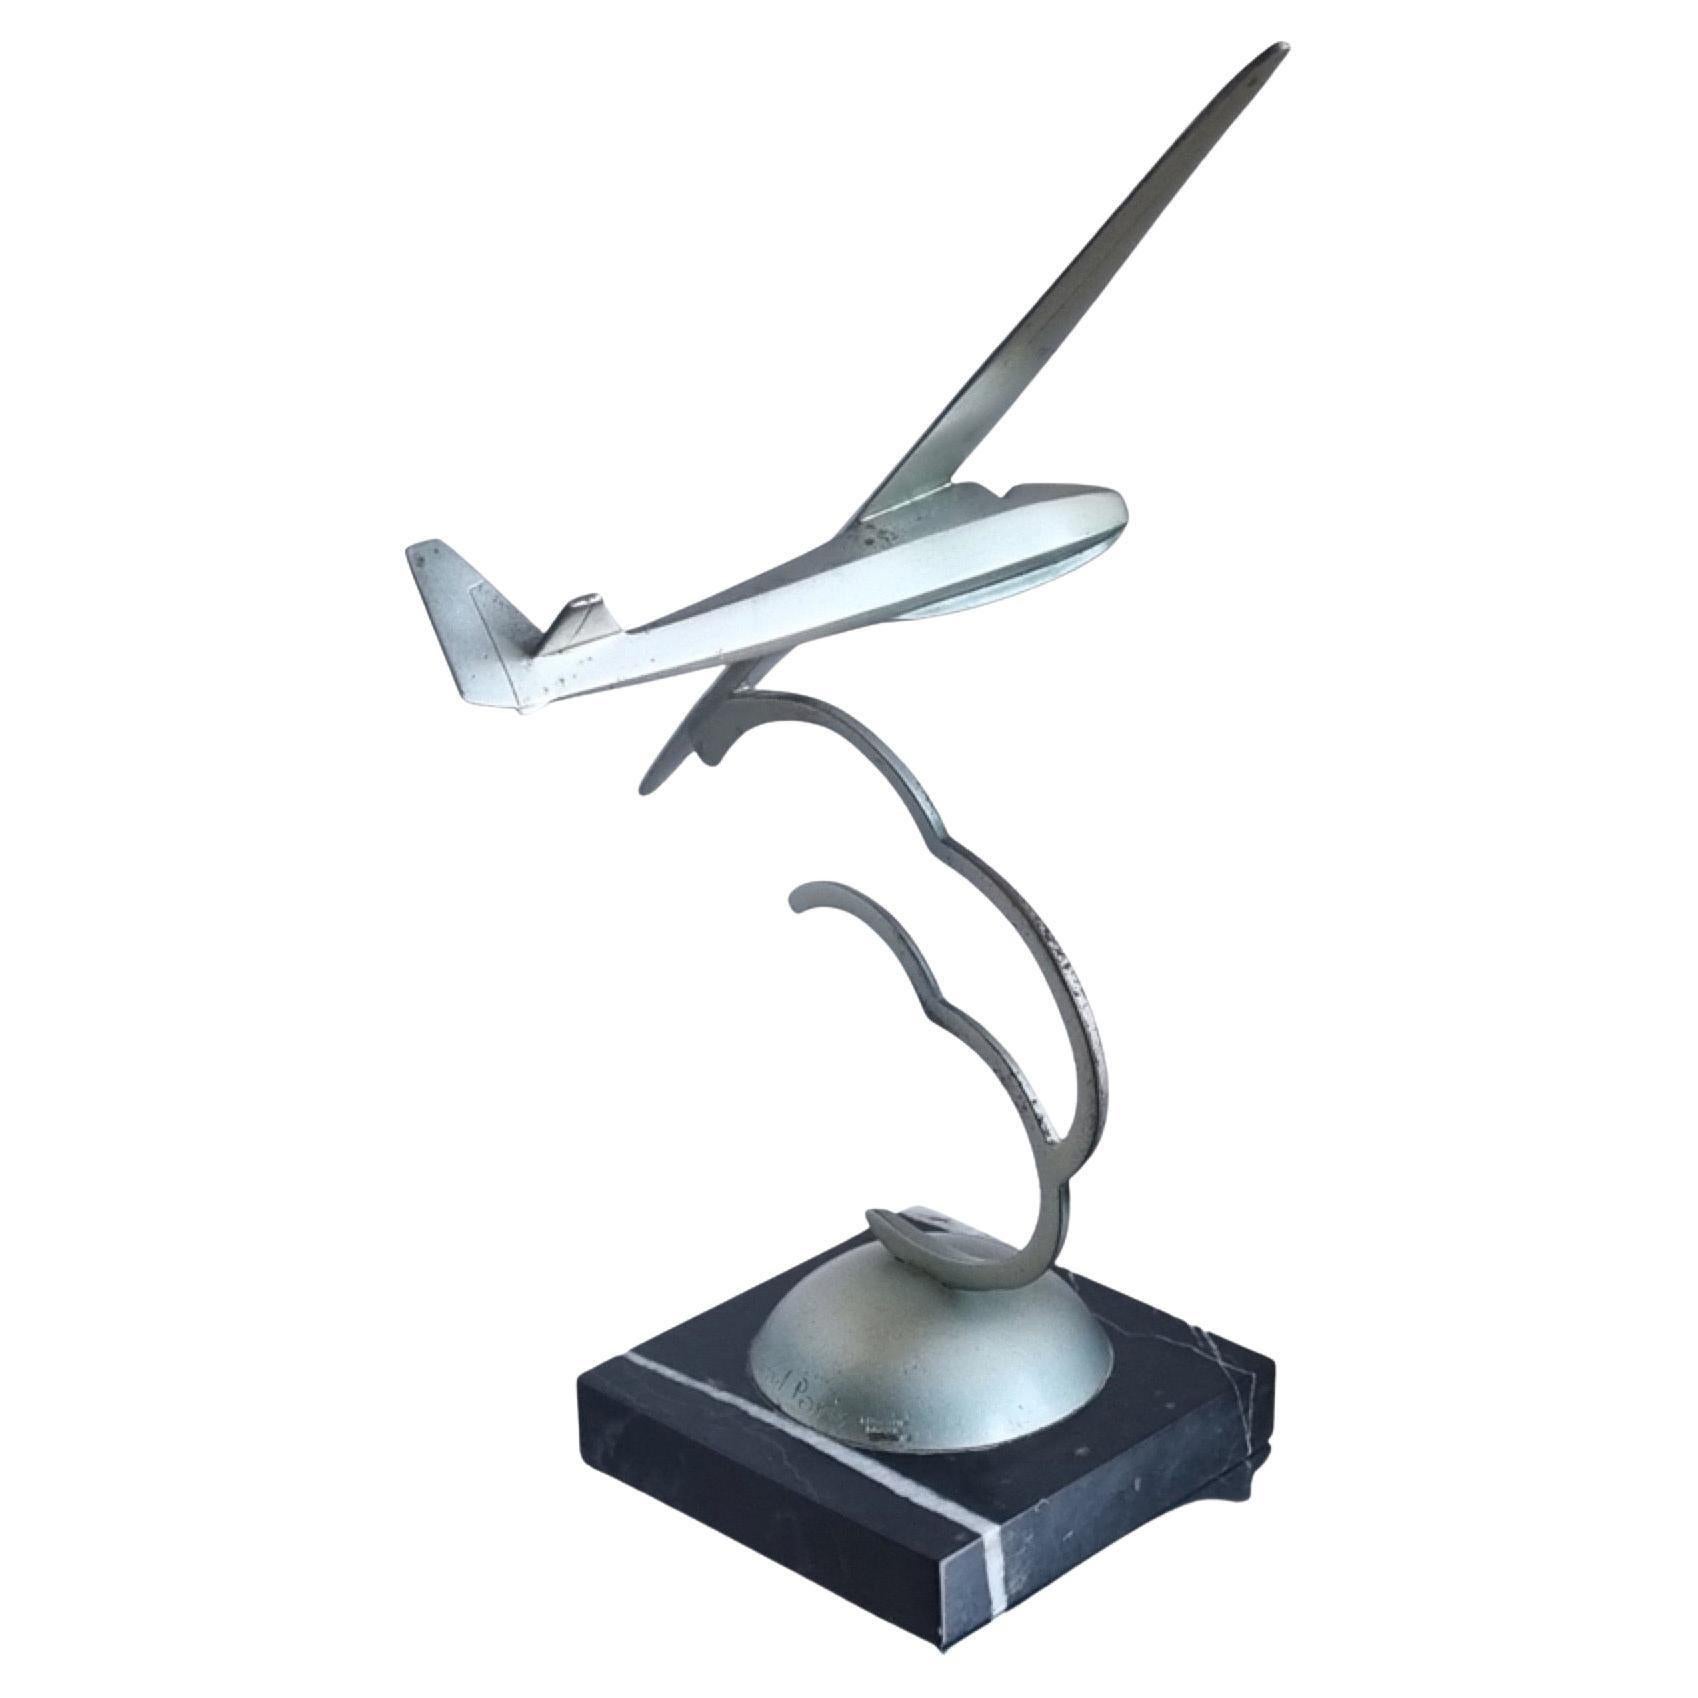 Roland Paris Bronze Statue Segelflugzeug 1933. Dieses Segelflugzeug basierte ursprünglich auf dem Schneider Grunau Baby Glider von 1931. Es hielt den Weltrekord für den längsten ununterbrochenen Flug, über 22 Stunden, und war bis 1935 das